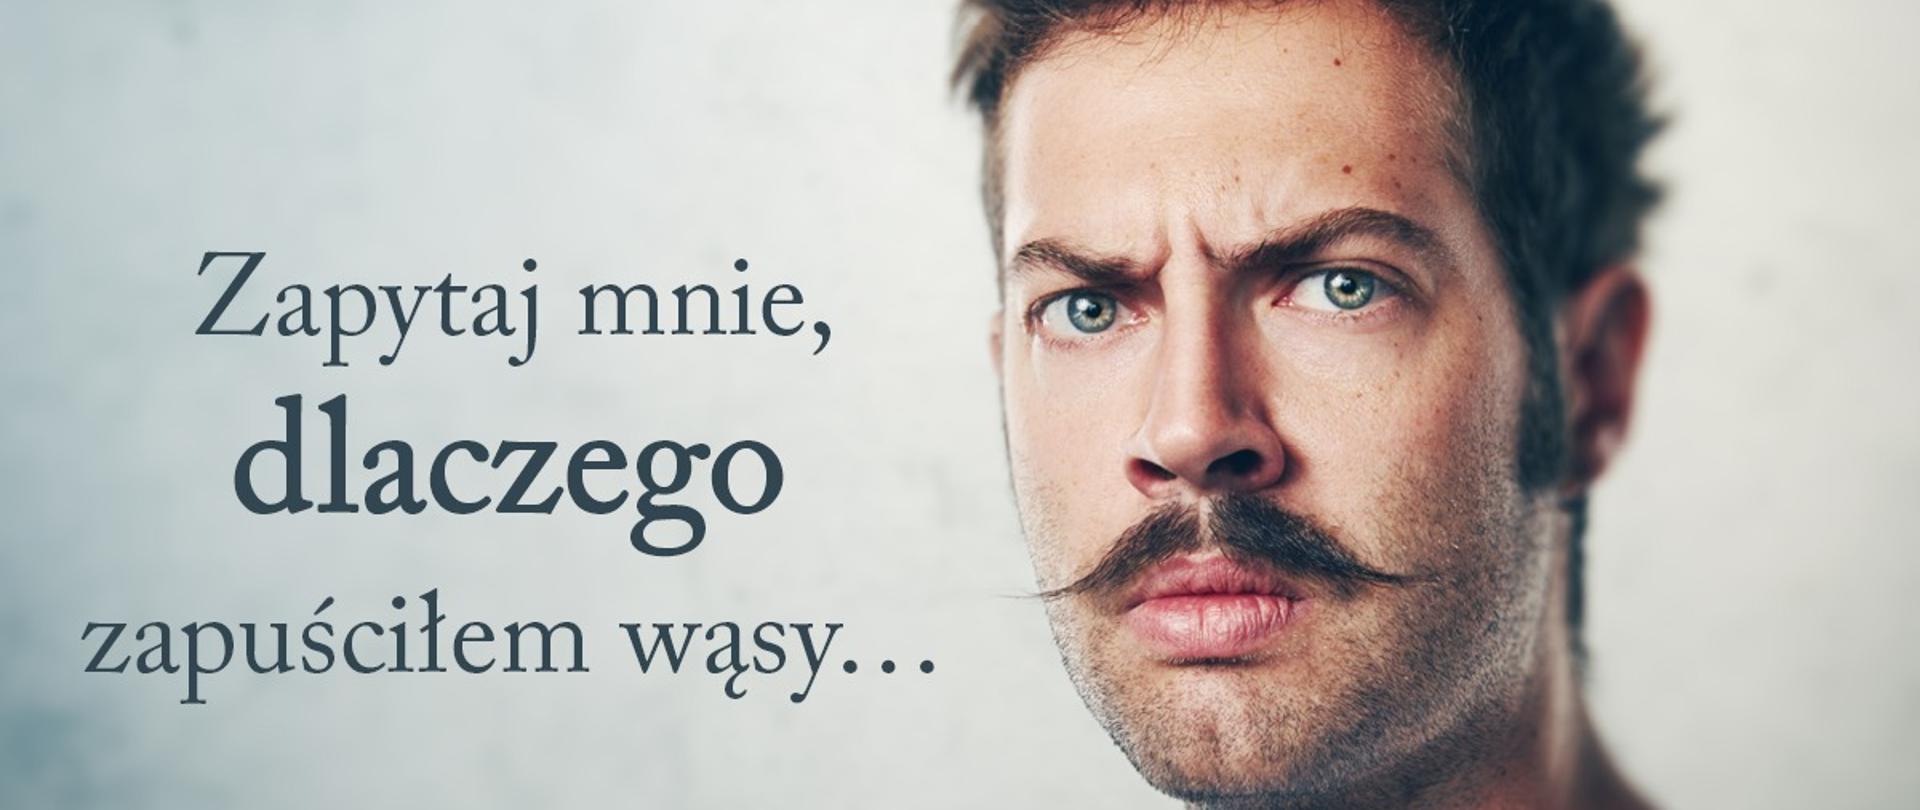 Obraz na głównym planie przedstawia mężczyznę z wąsami, oraz napis "Zapytaj mnie, dlaczego zapuściłem wąsy.." Na dole są napisy: "Movember 2023|Międzynarodowy Miesiąc Świadomości Męskich Nowotworów". W prawym górnym rogu widnieje logo Ministerstwa Zdrowia i Państwowej Inspekcji Sanitarnej.